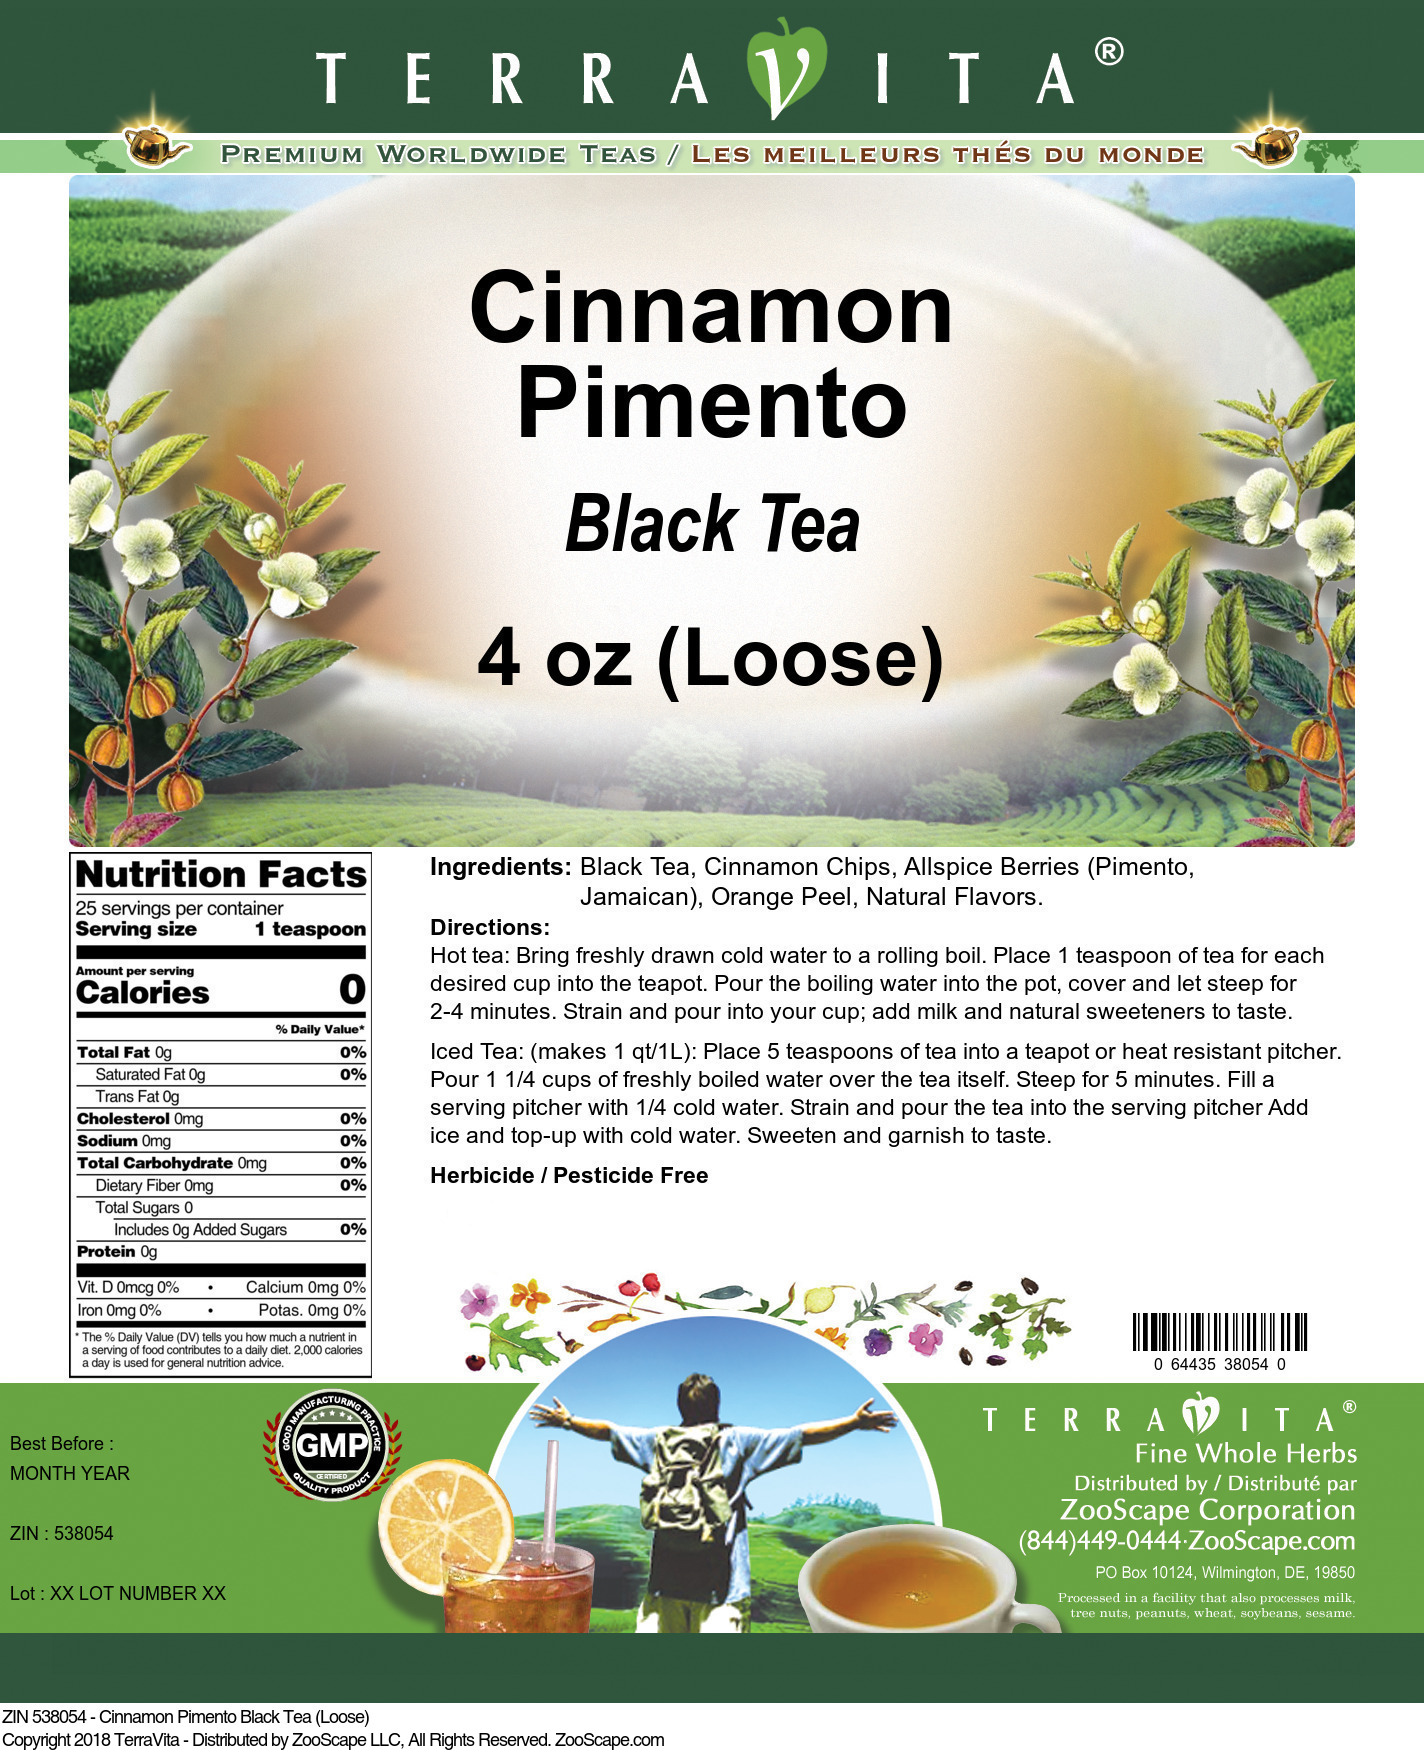 Cinnamon Pimento Black Tea (Loose) - Label